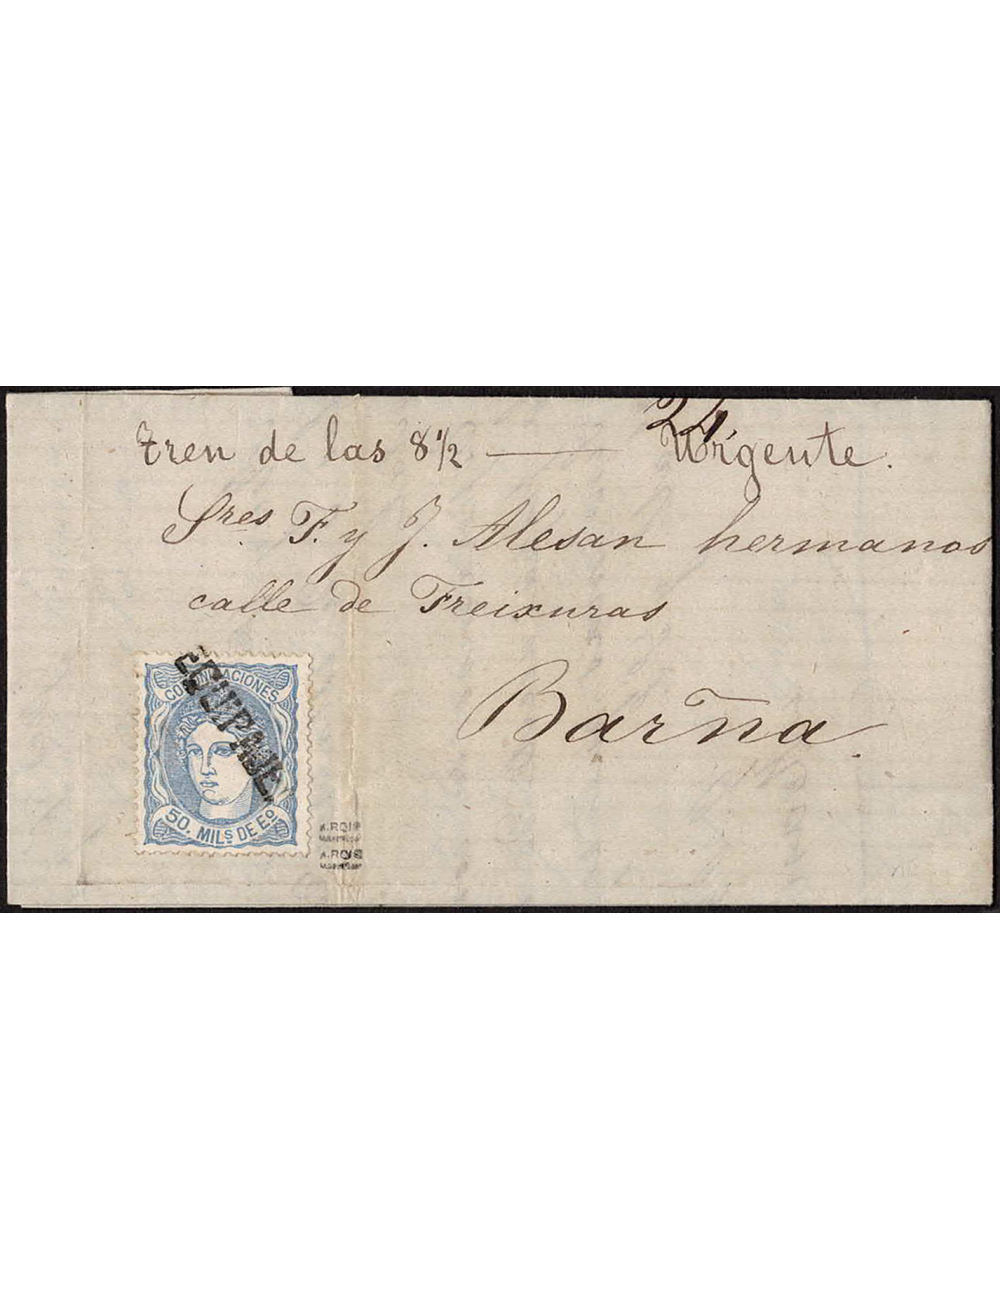 1871 (24 JUL) Granollers a Barcelona. mils. ultramar mat. marca “EQUIPAJE” lineal en negro de Granollers. mns. “Tren de las 8 1/